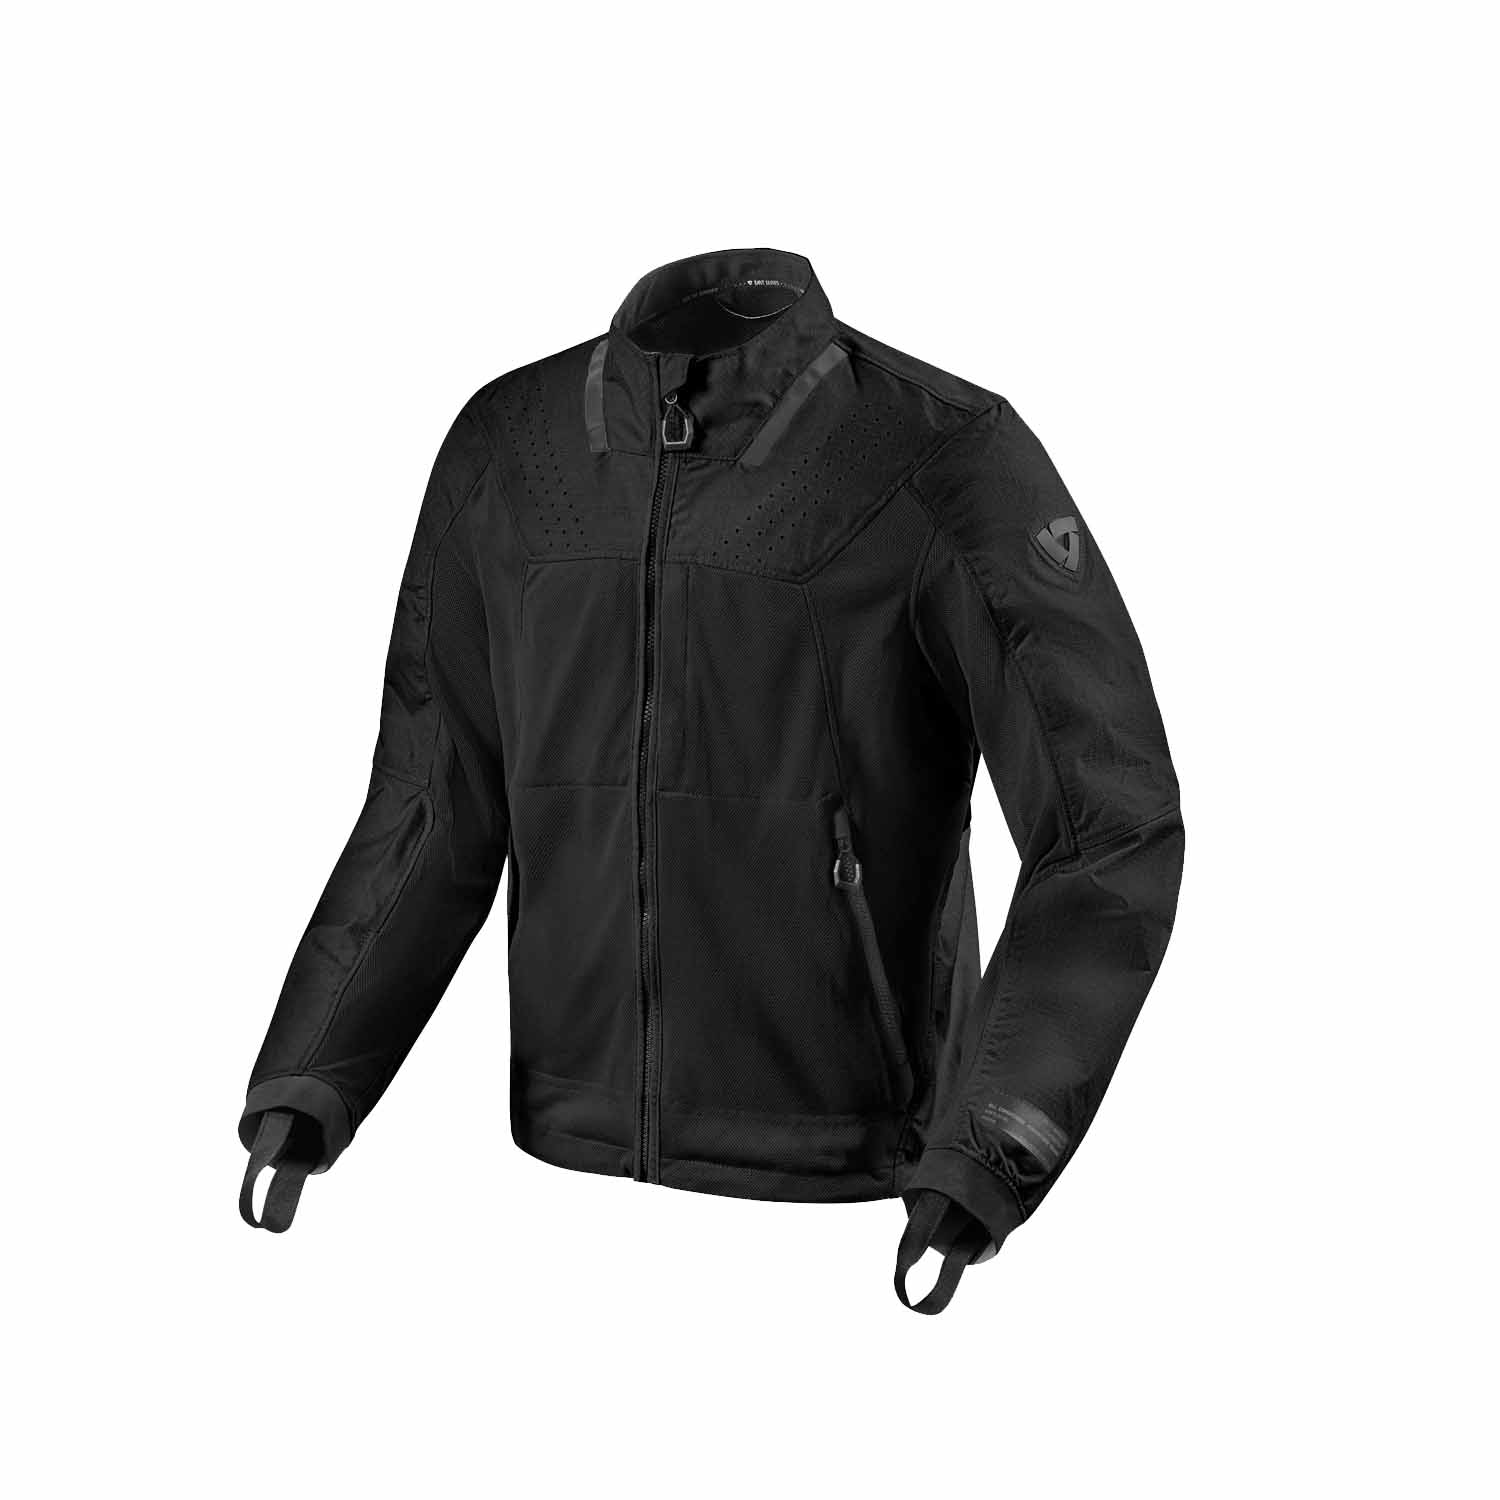 Image of REV'IT! Territory Jacket Black Standard Size XL EN